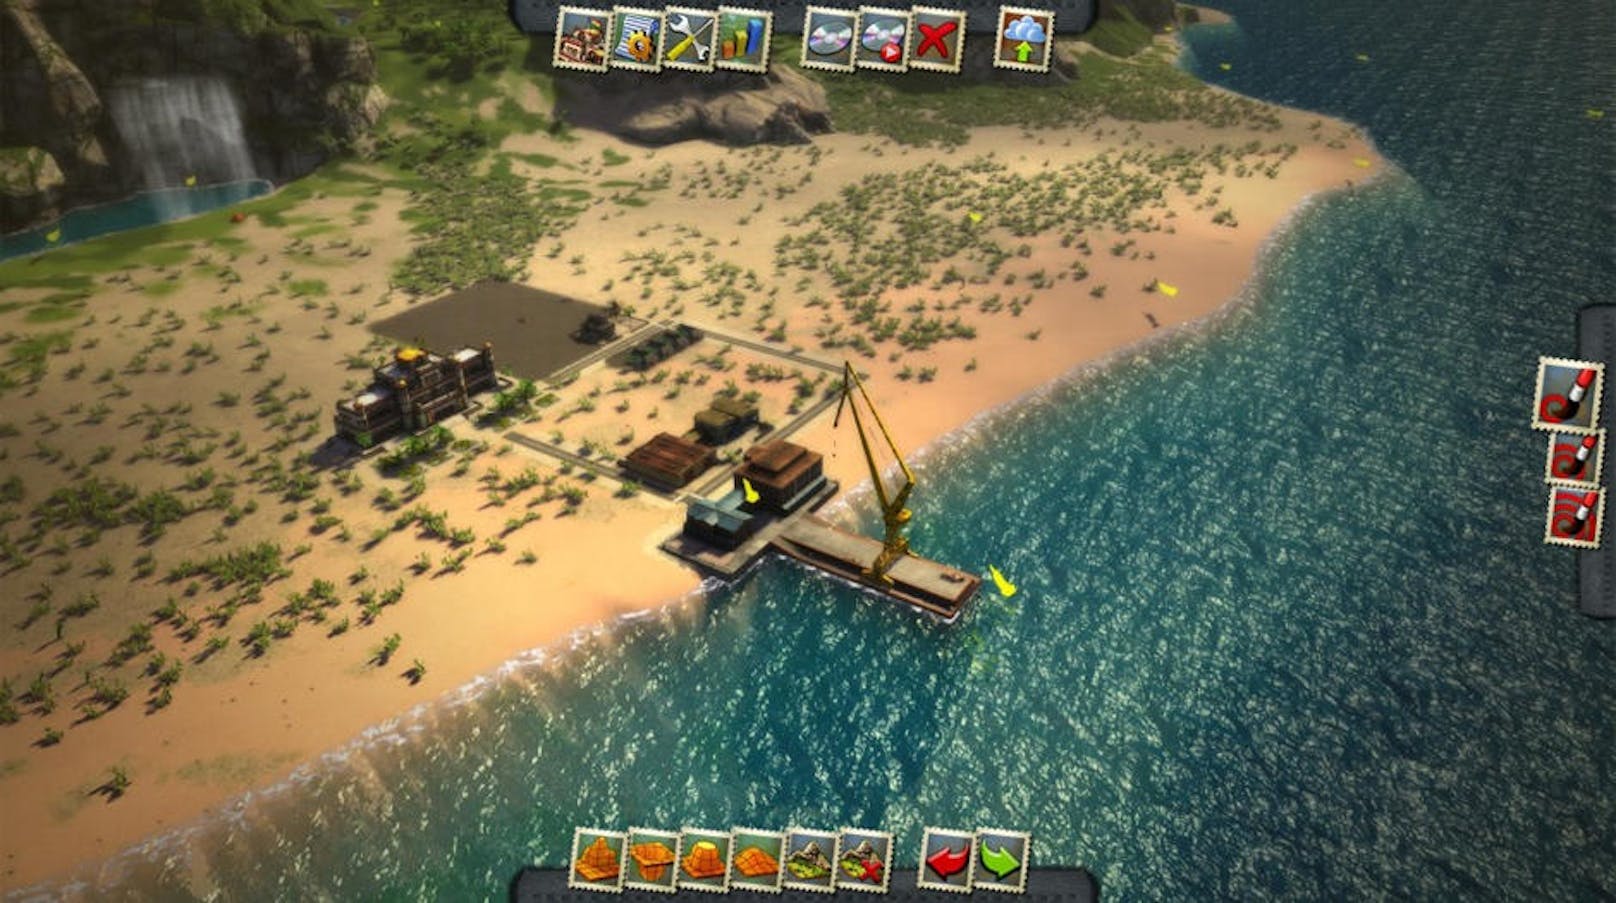 Der Fantasie sind in Tropico 5 keine Grenzen gesetzt. Ob man sich nun als skrupelloser Herrscher oder milder Staatsvater zeigt, das Spiel überzeugt mit unheimlich viel Tiefe und sehr gutem Humor.